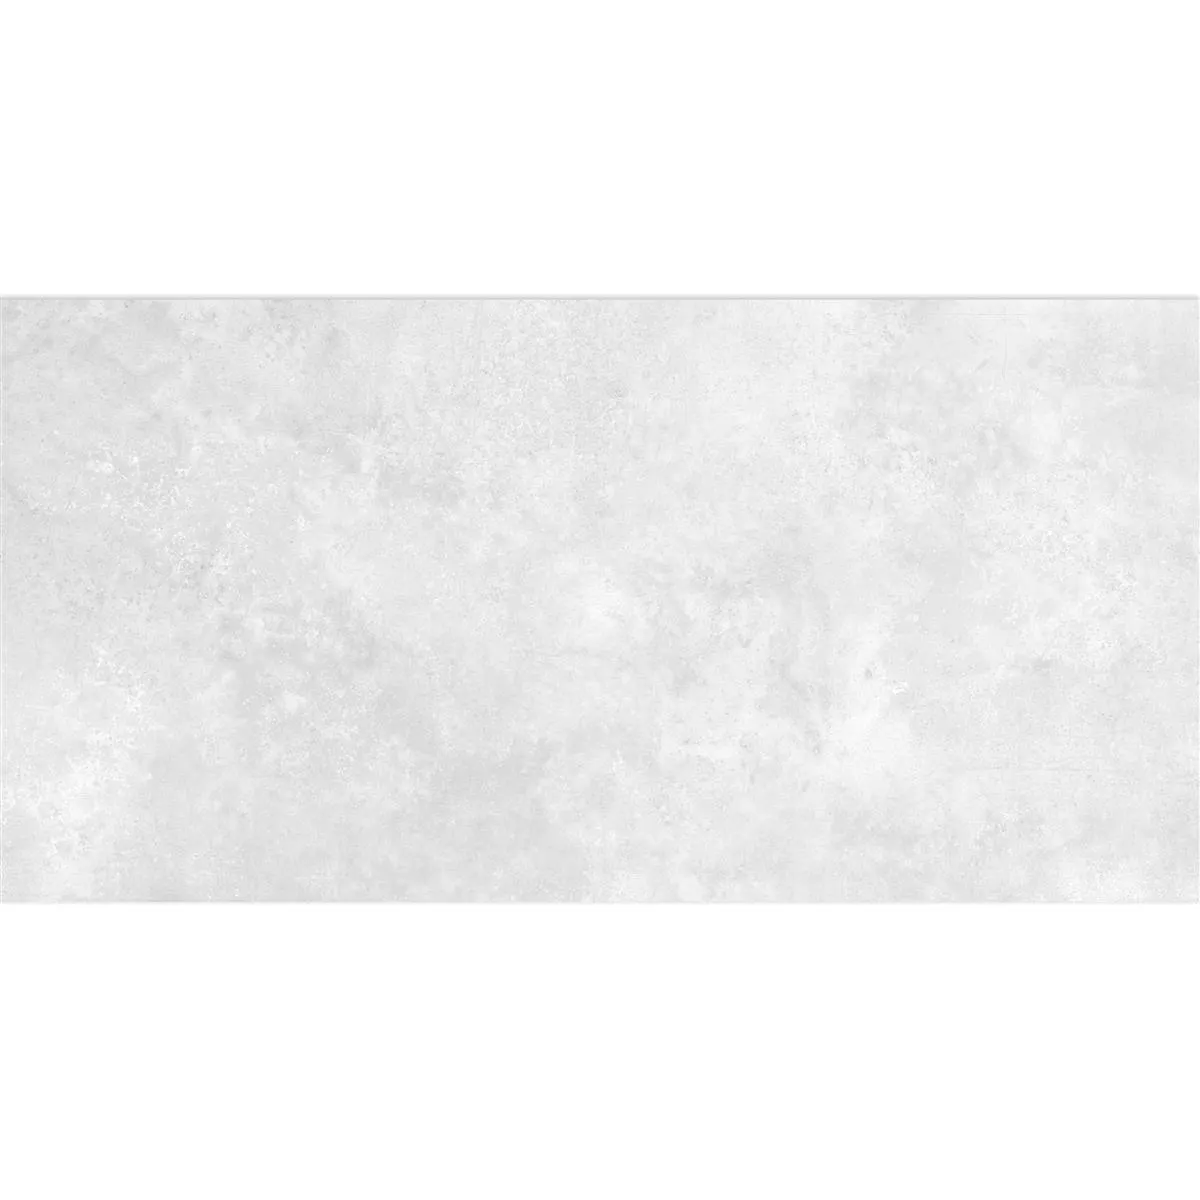 Lattialaatta Illusion Metallin Näköinen Lappato Valkoinen 30x60cm